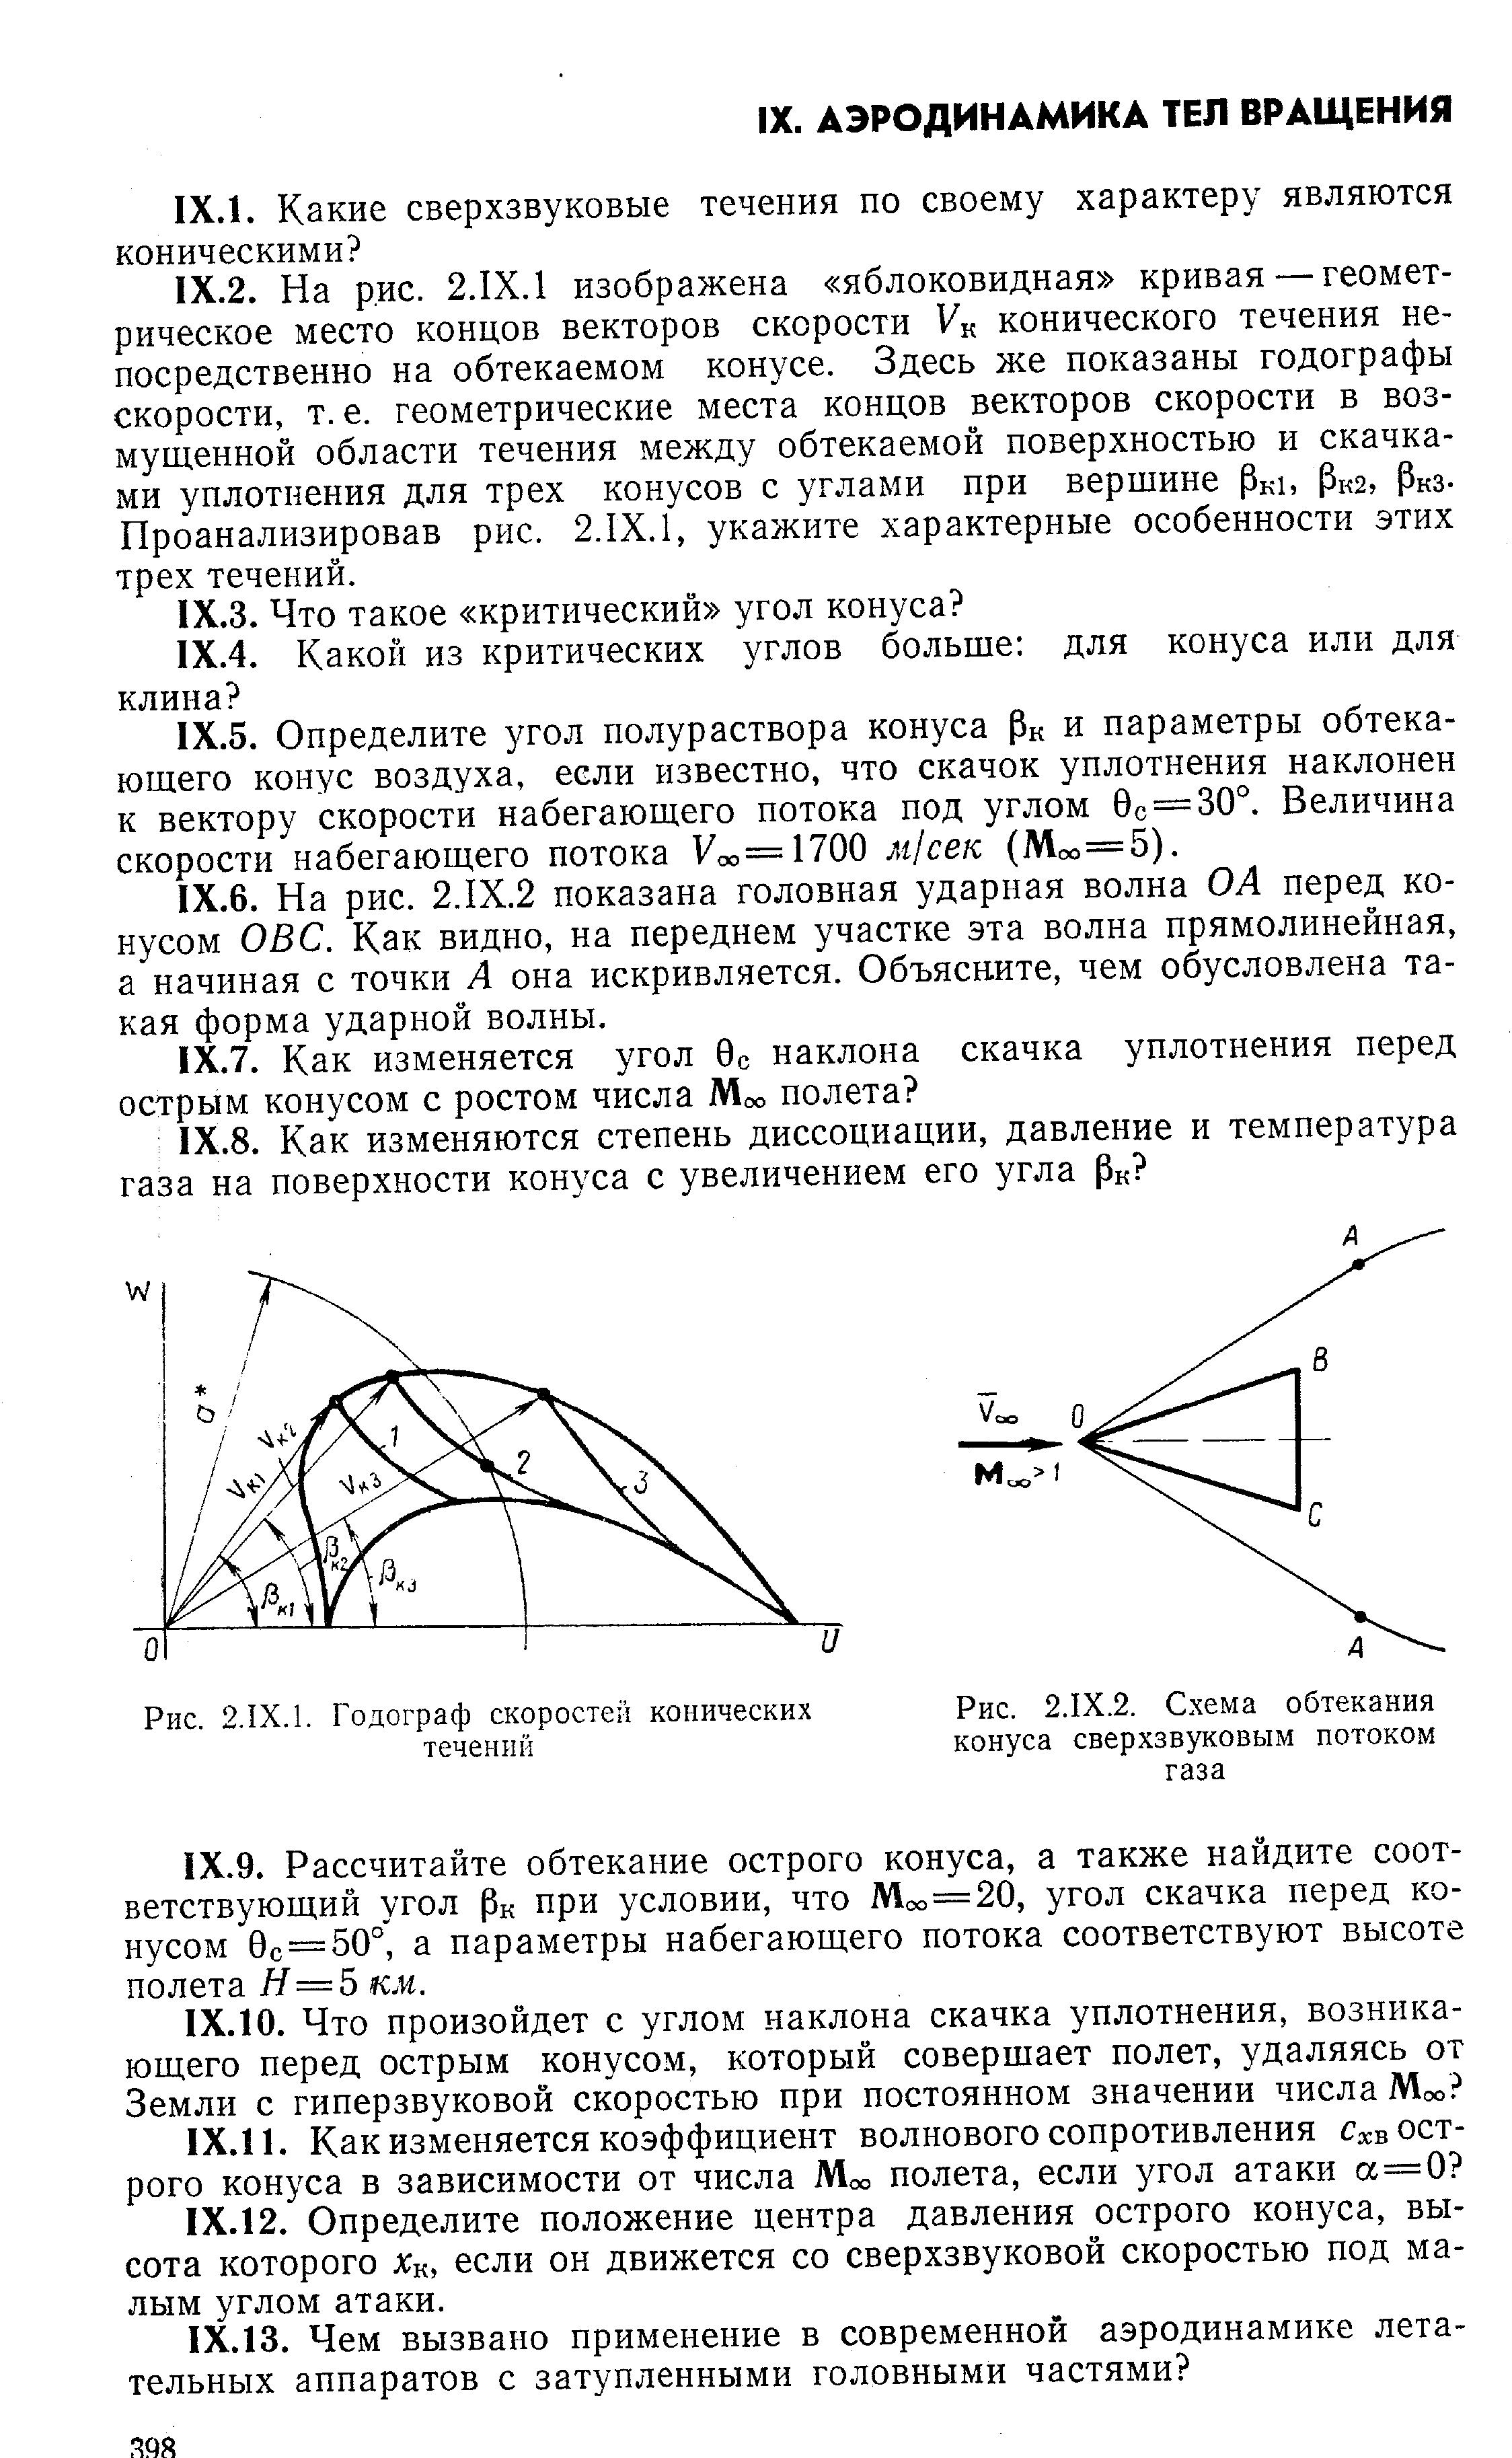 Рис. 2.1Х.2. Схема обтекания конуса сверхзвуковым потоком газа
